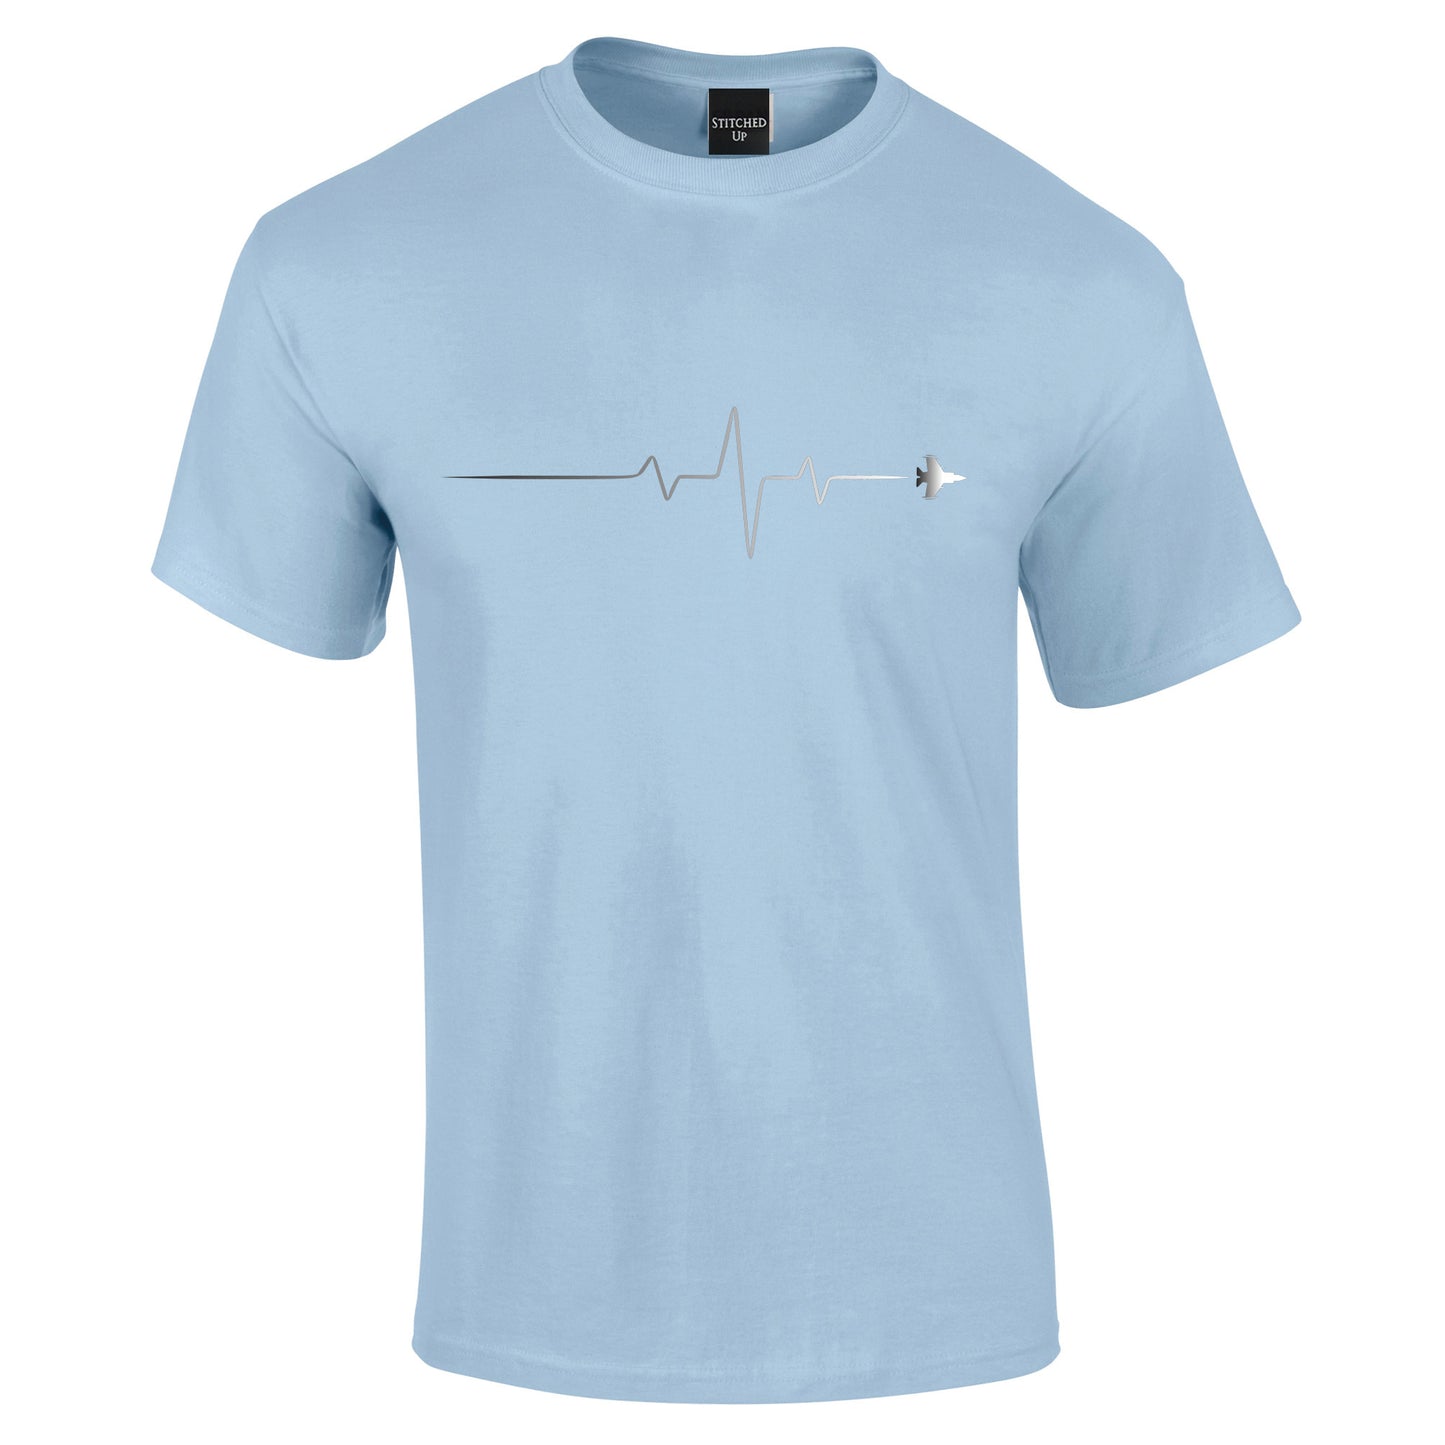 My Heartbeat Aviation T-Shirt